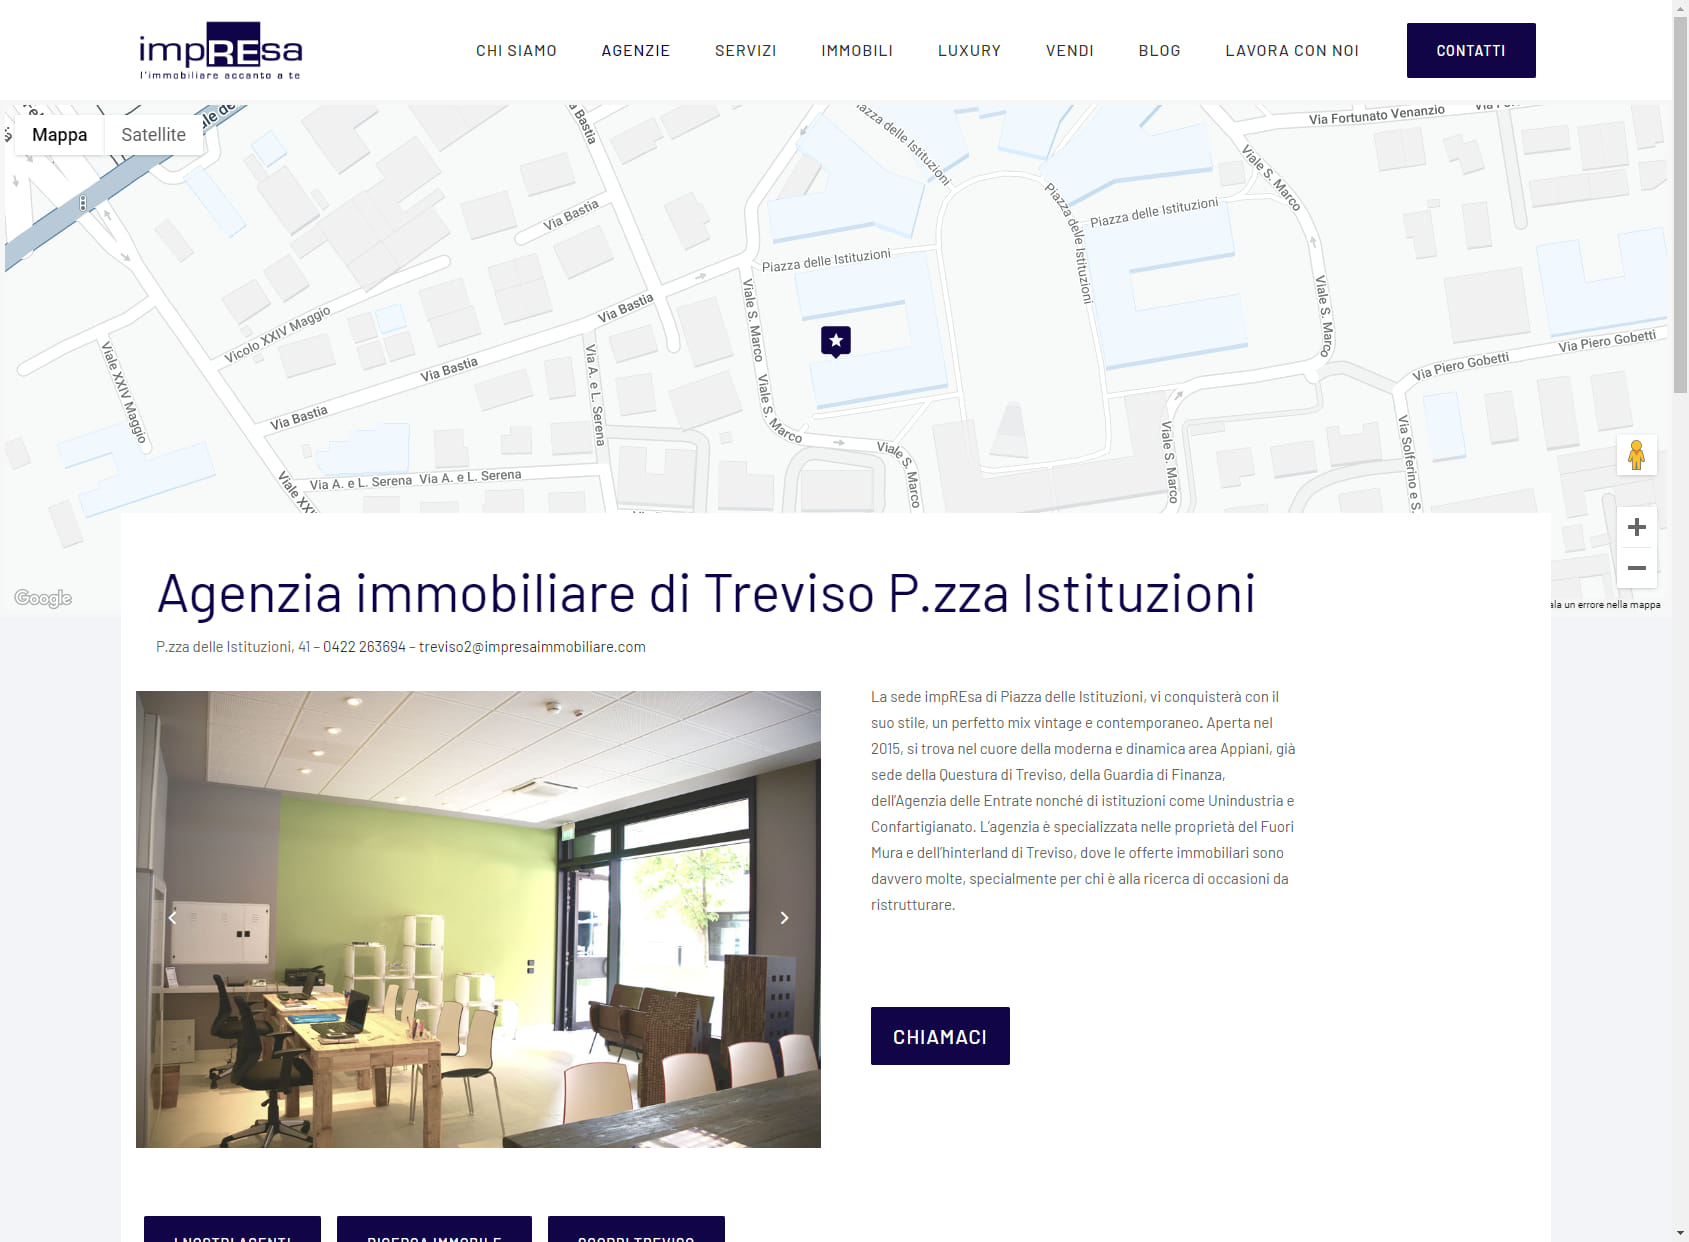 Agenzia Immobiliare Treviso Piazza Istituzioni - impREsa